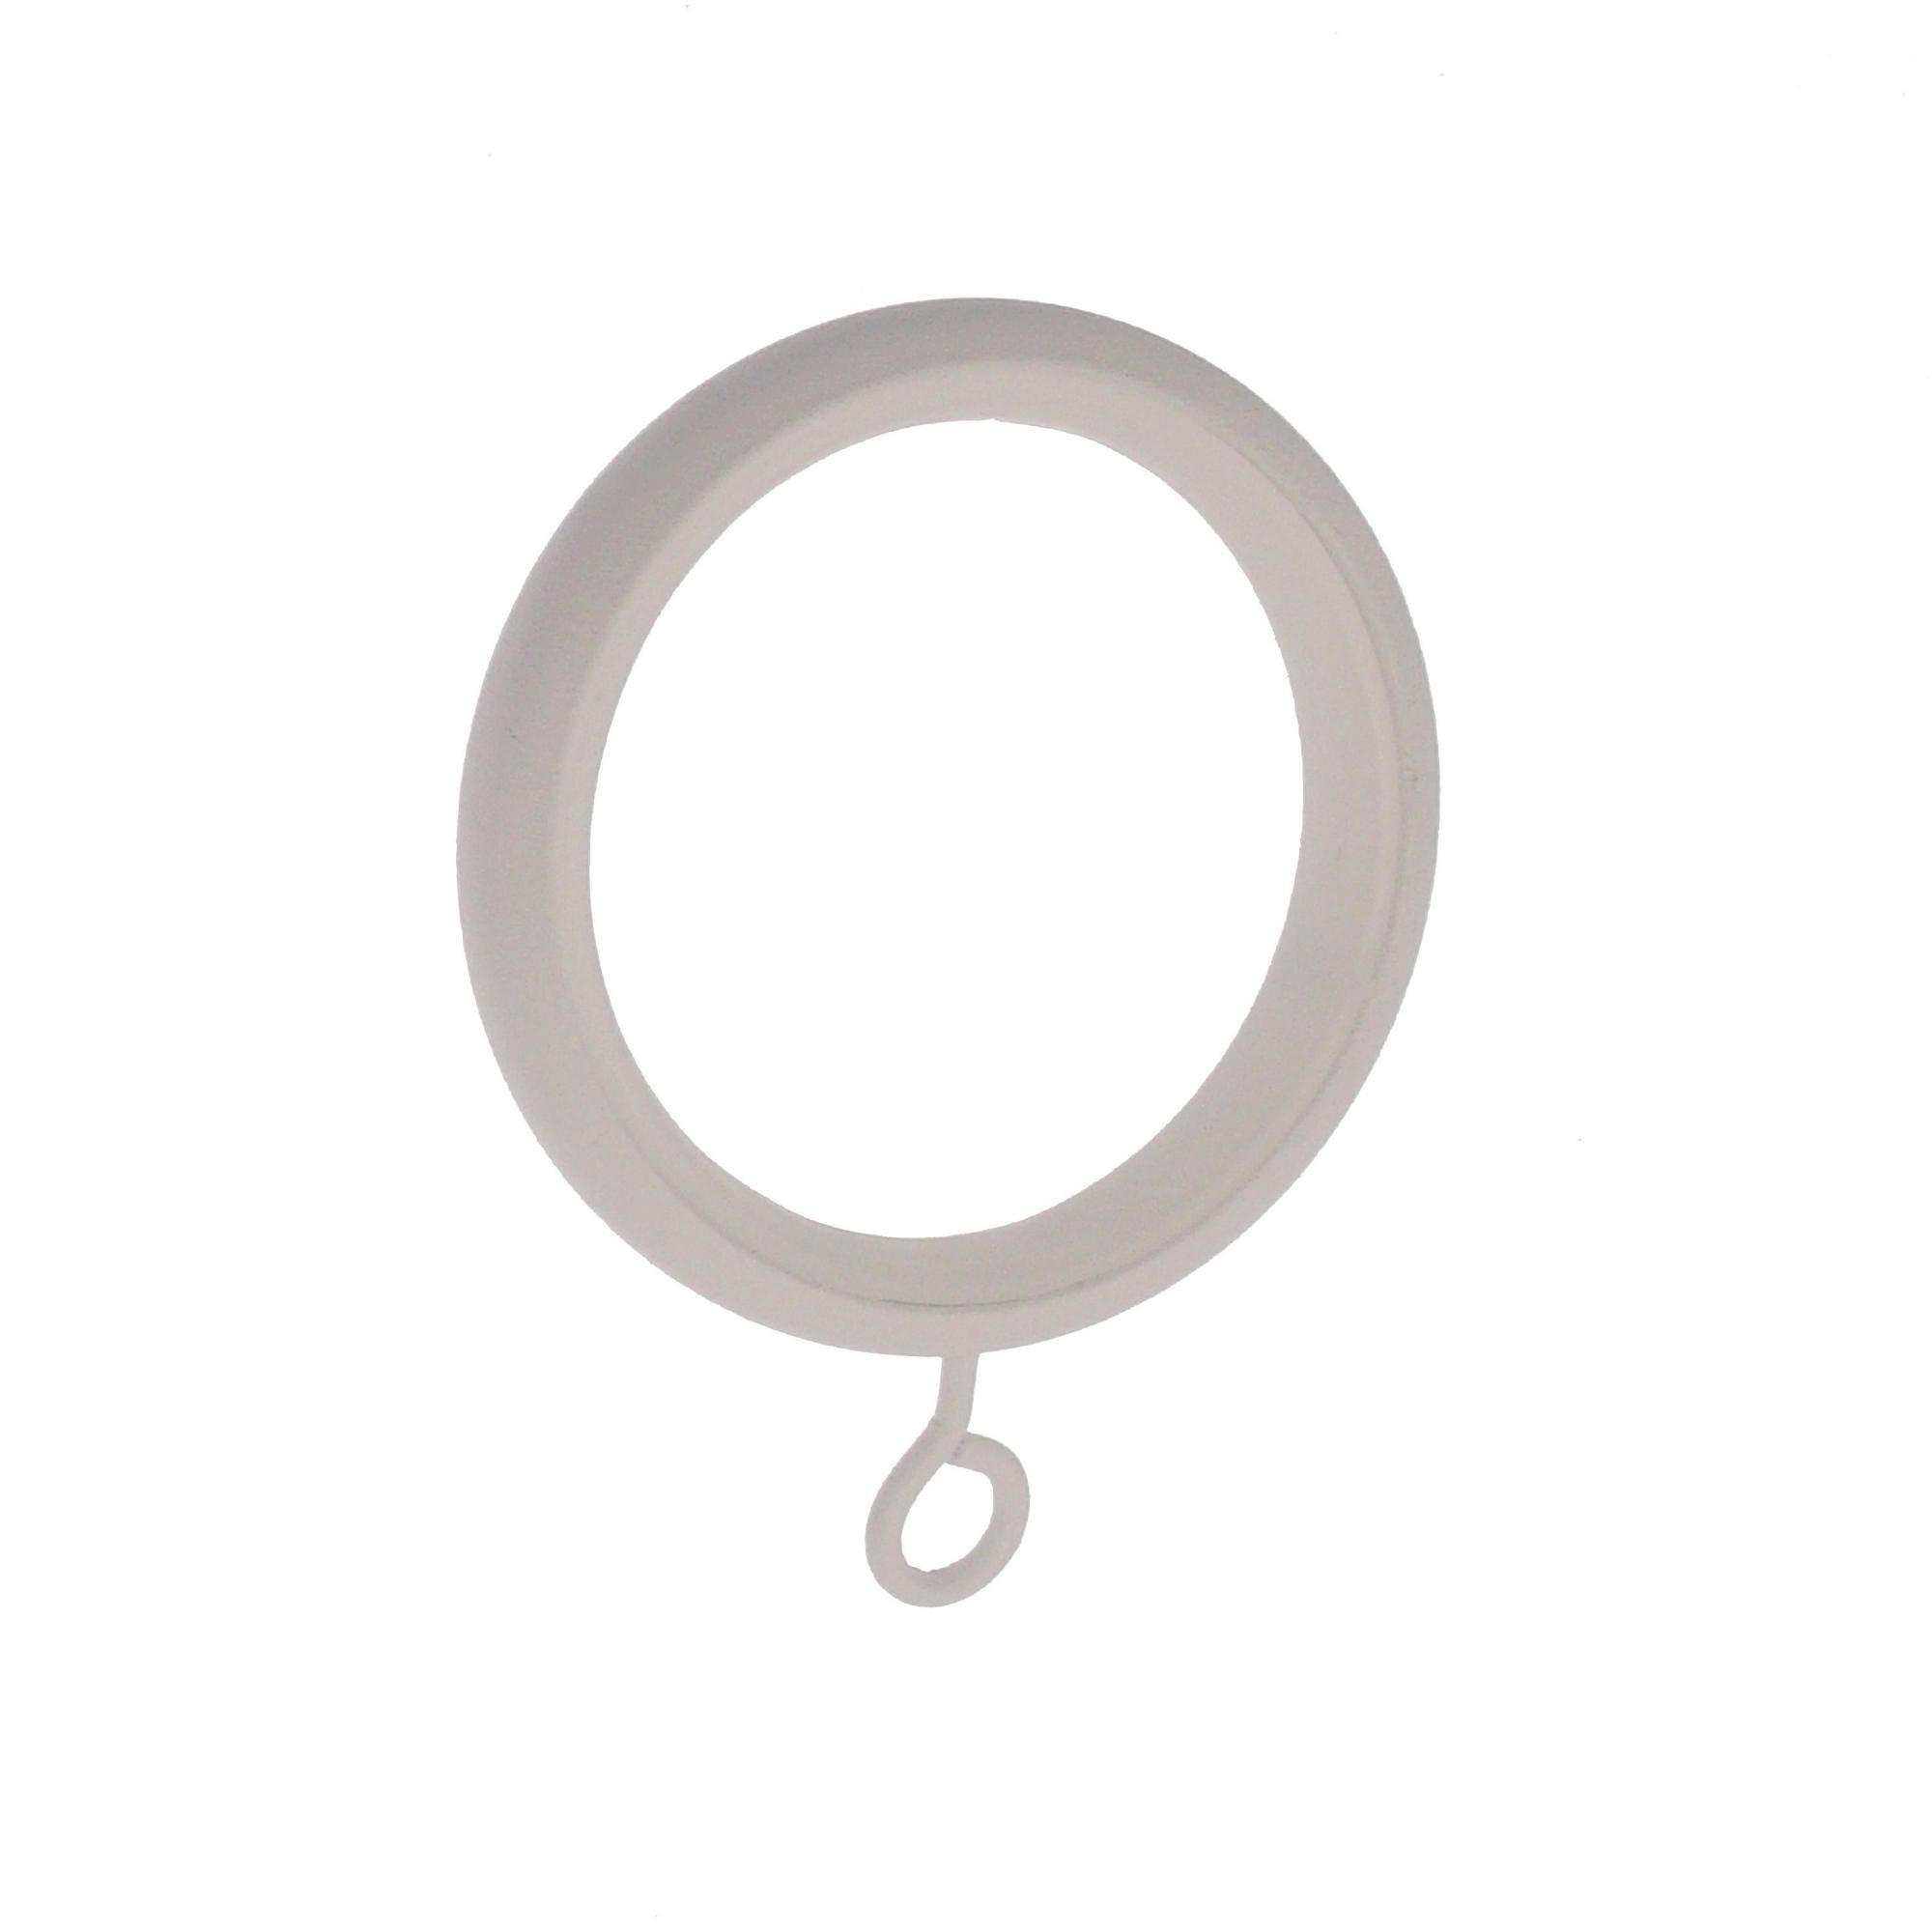 White curtain rod pôle anneau 28mm diamètre intérieur des anneaux 